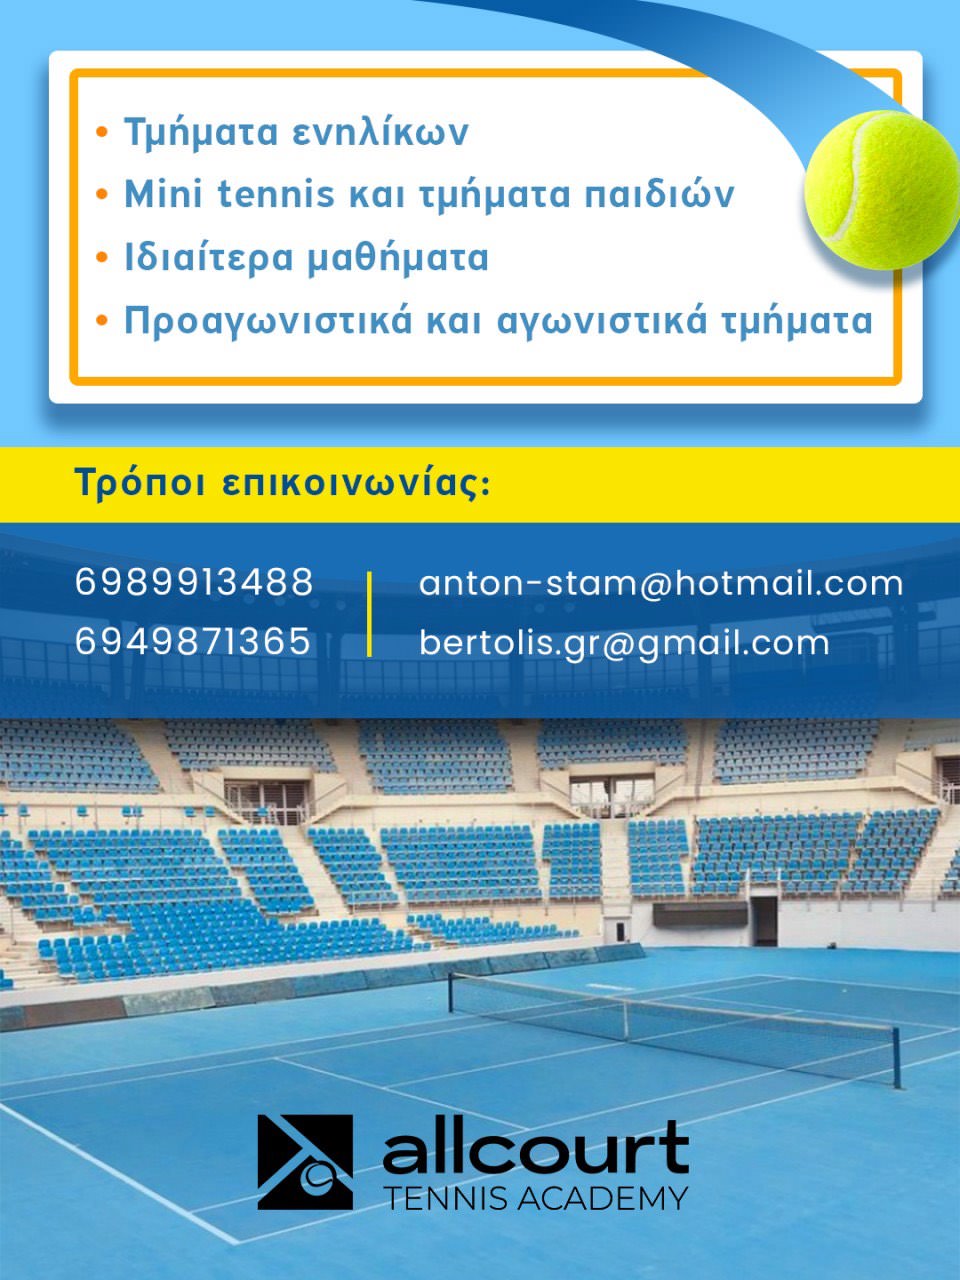 Allcourt Tennis Academy